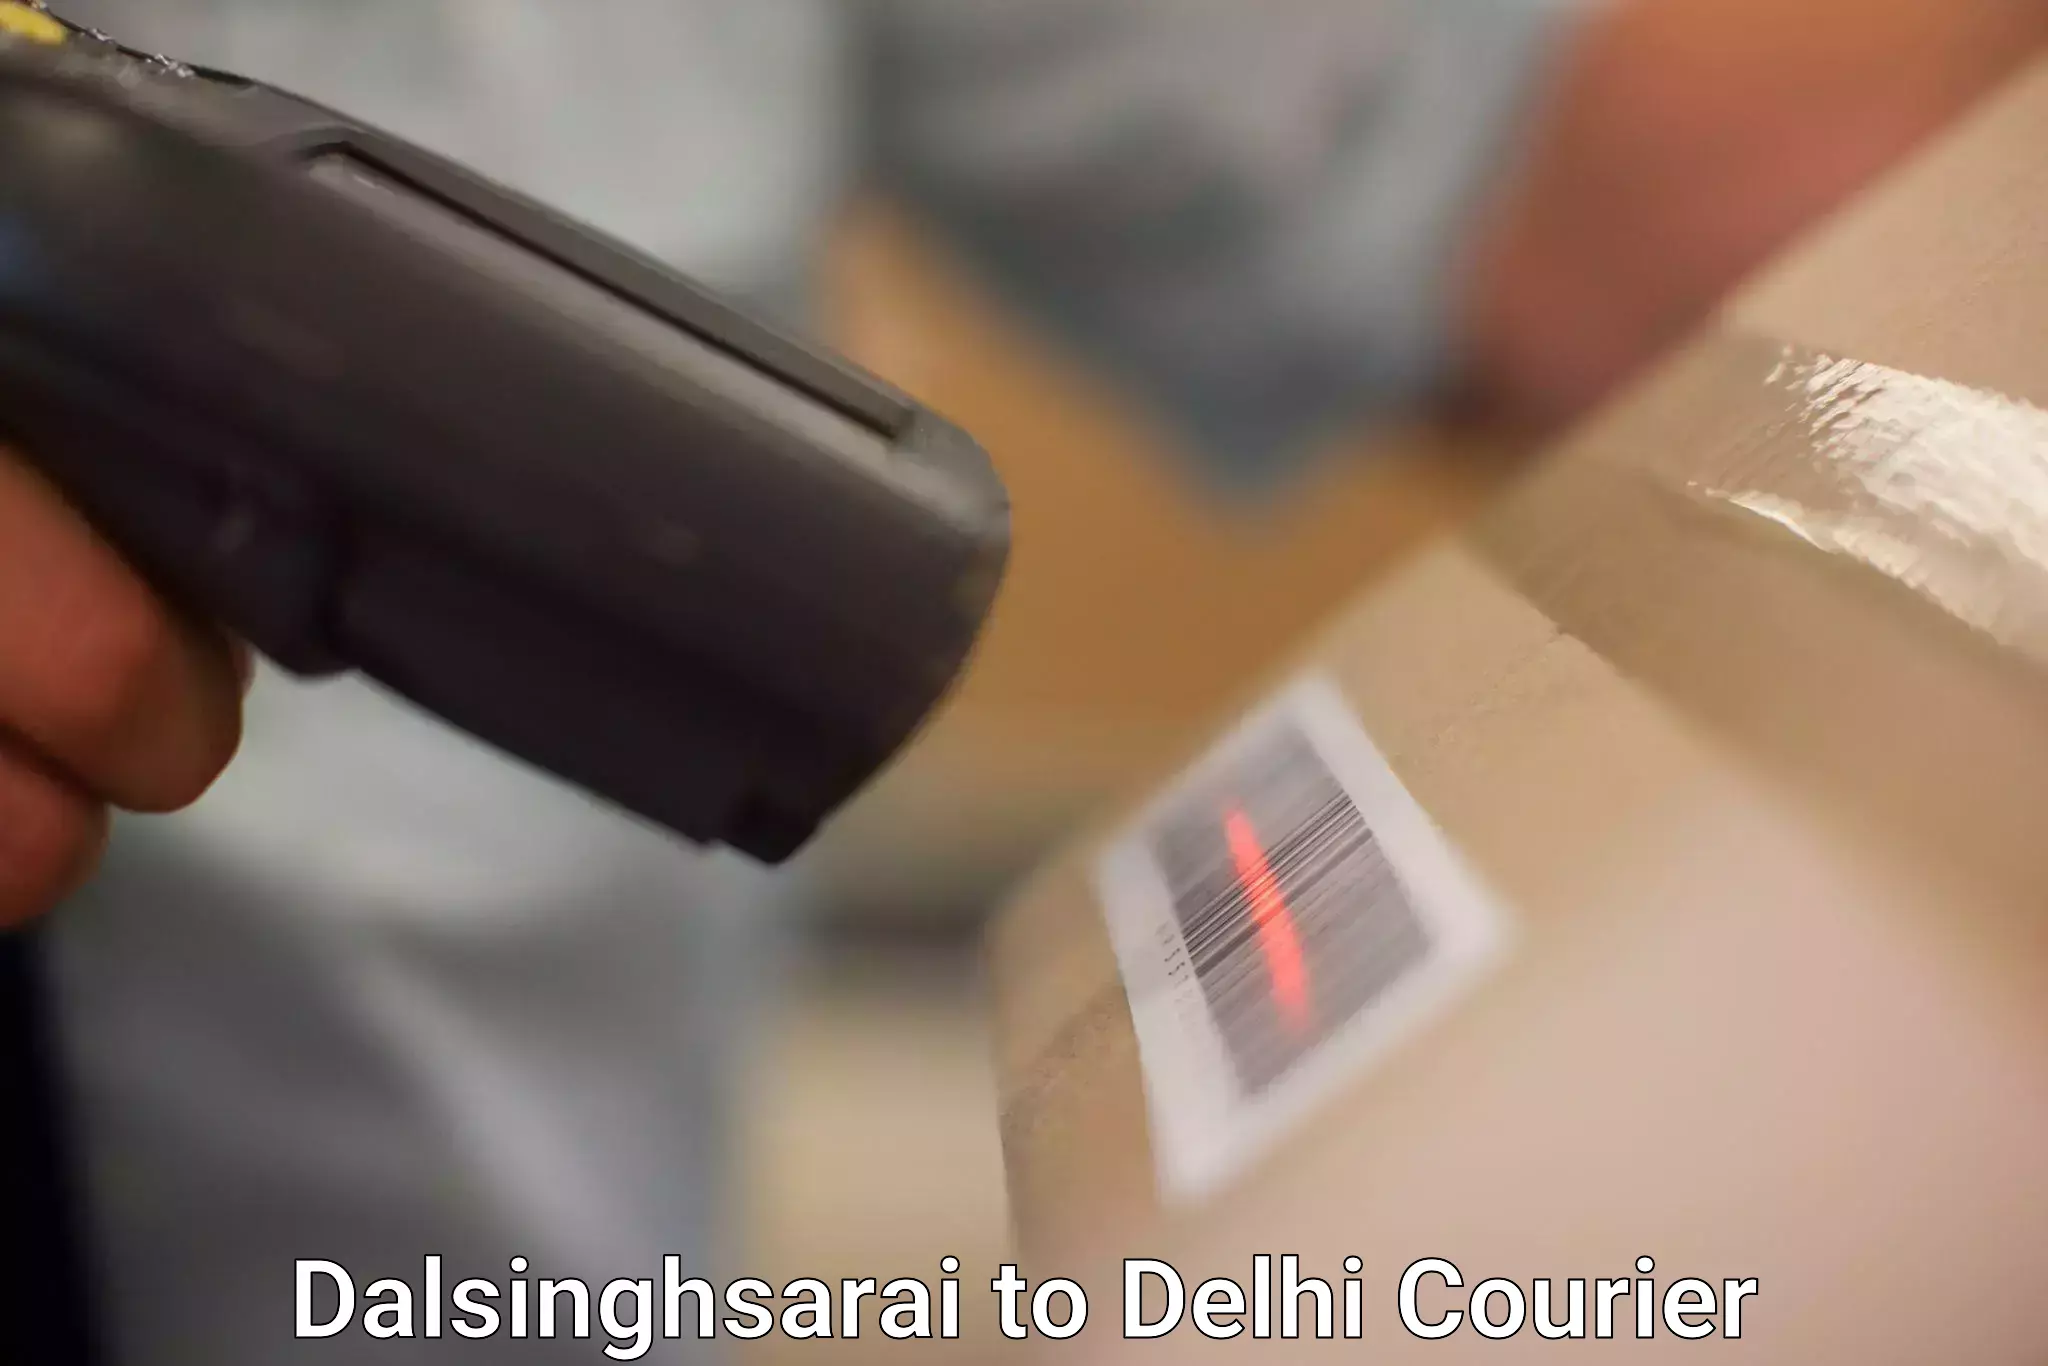 Courier service comparison in Dalsinghsarai to Delhi